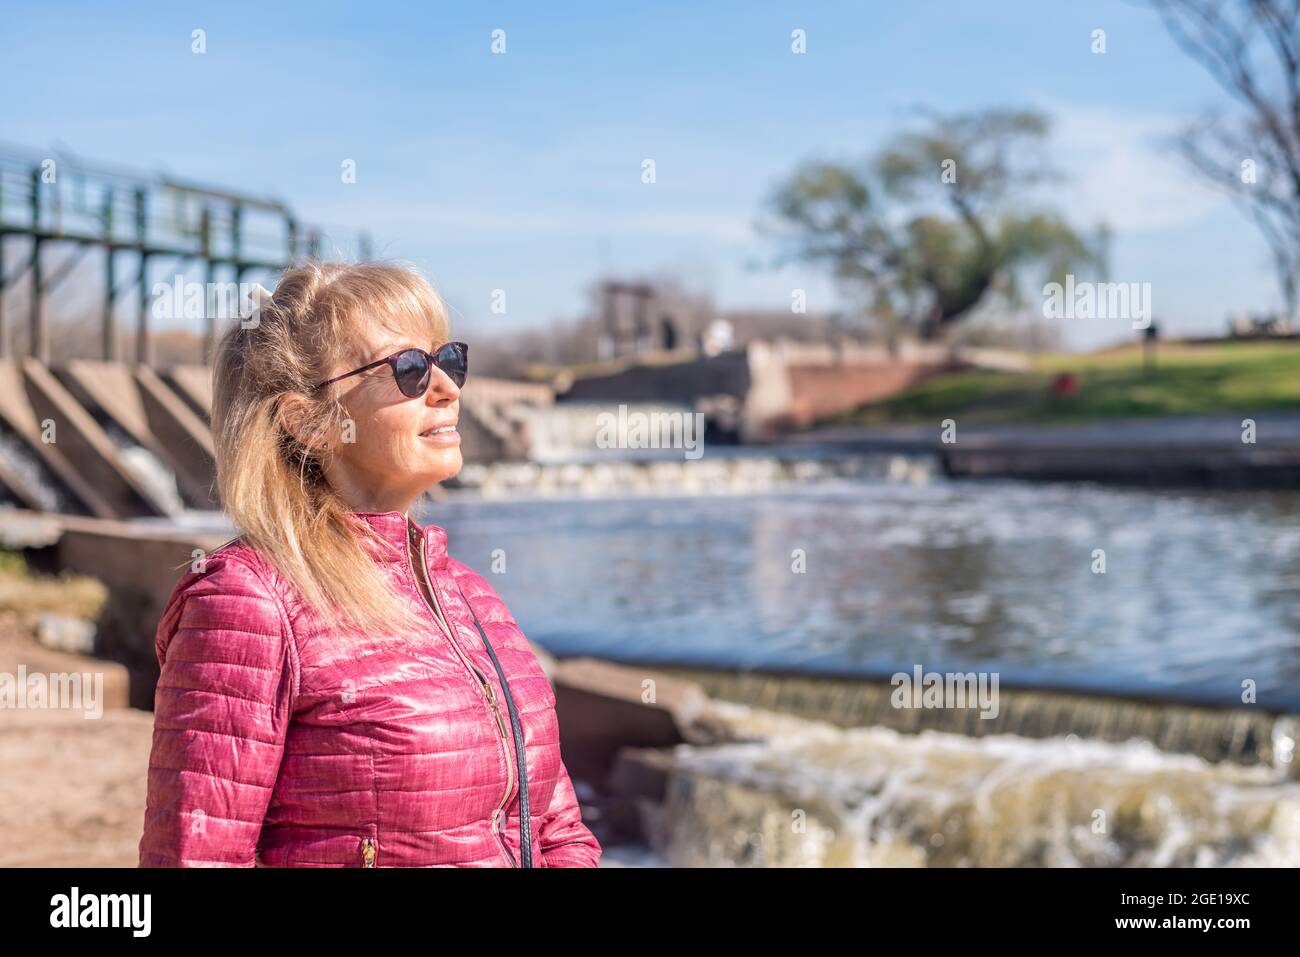 Beschnittene Ansicht einer fröhlichen erwachsenen Frau, die an einem sonnigen Tag mit einer Sonnenbrille im Park mit einem Teich hinter sich steht. Stockfoto